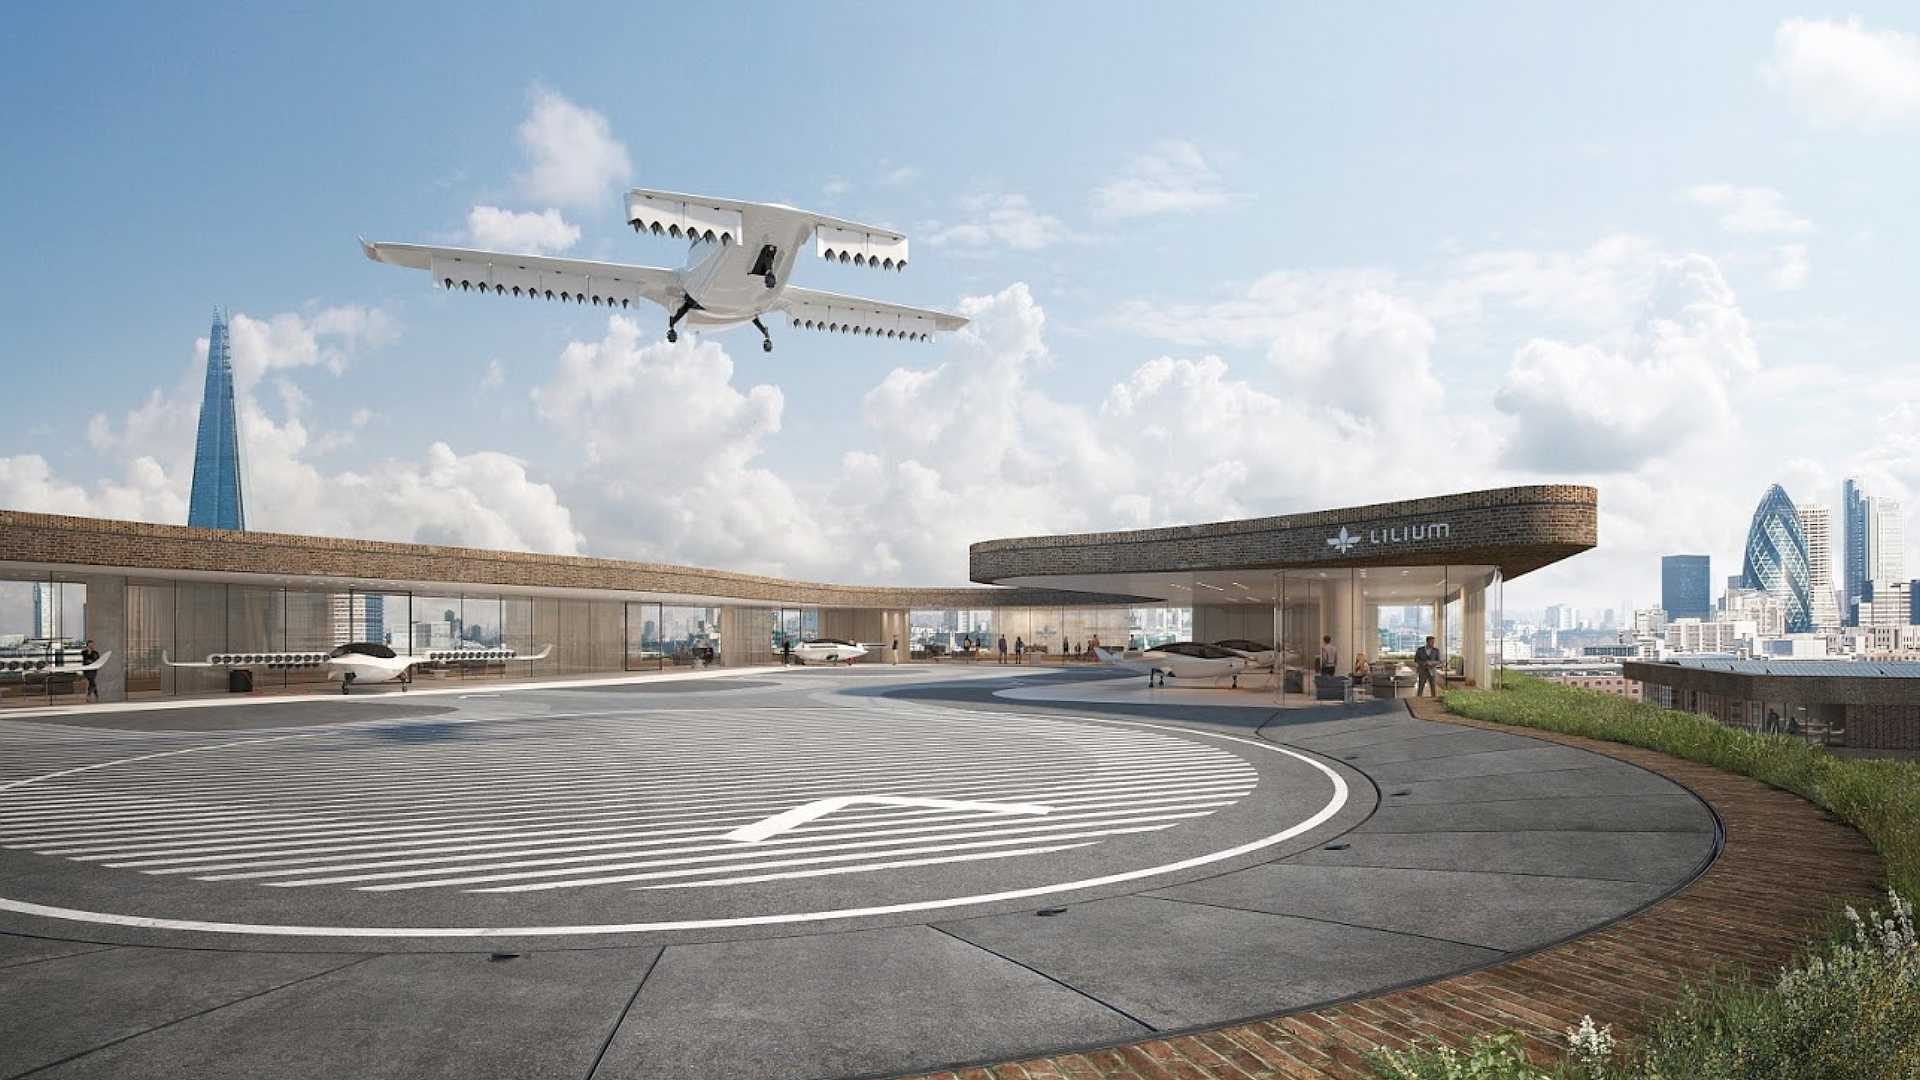 Vertiport von Lilium: so könnte ein Flughafen aussehen